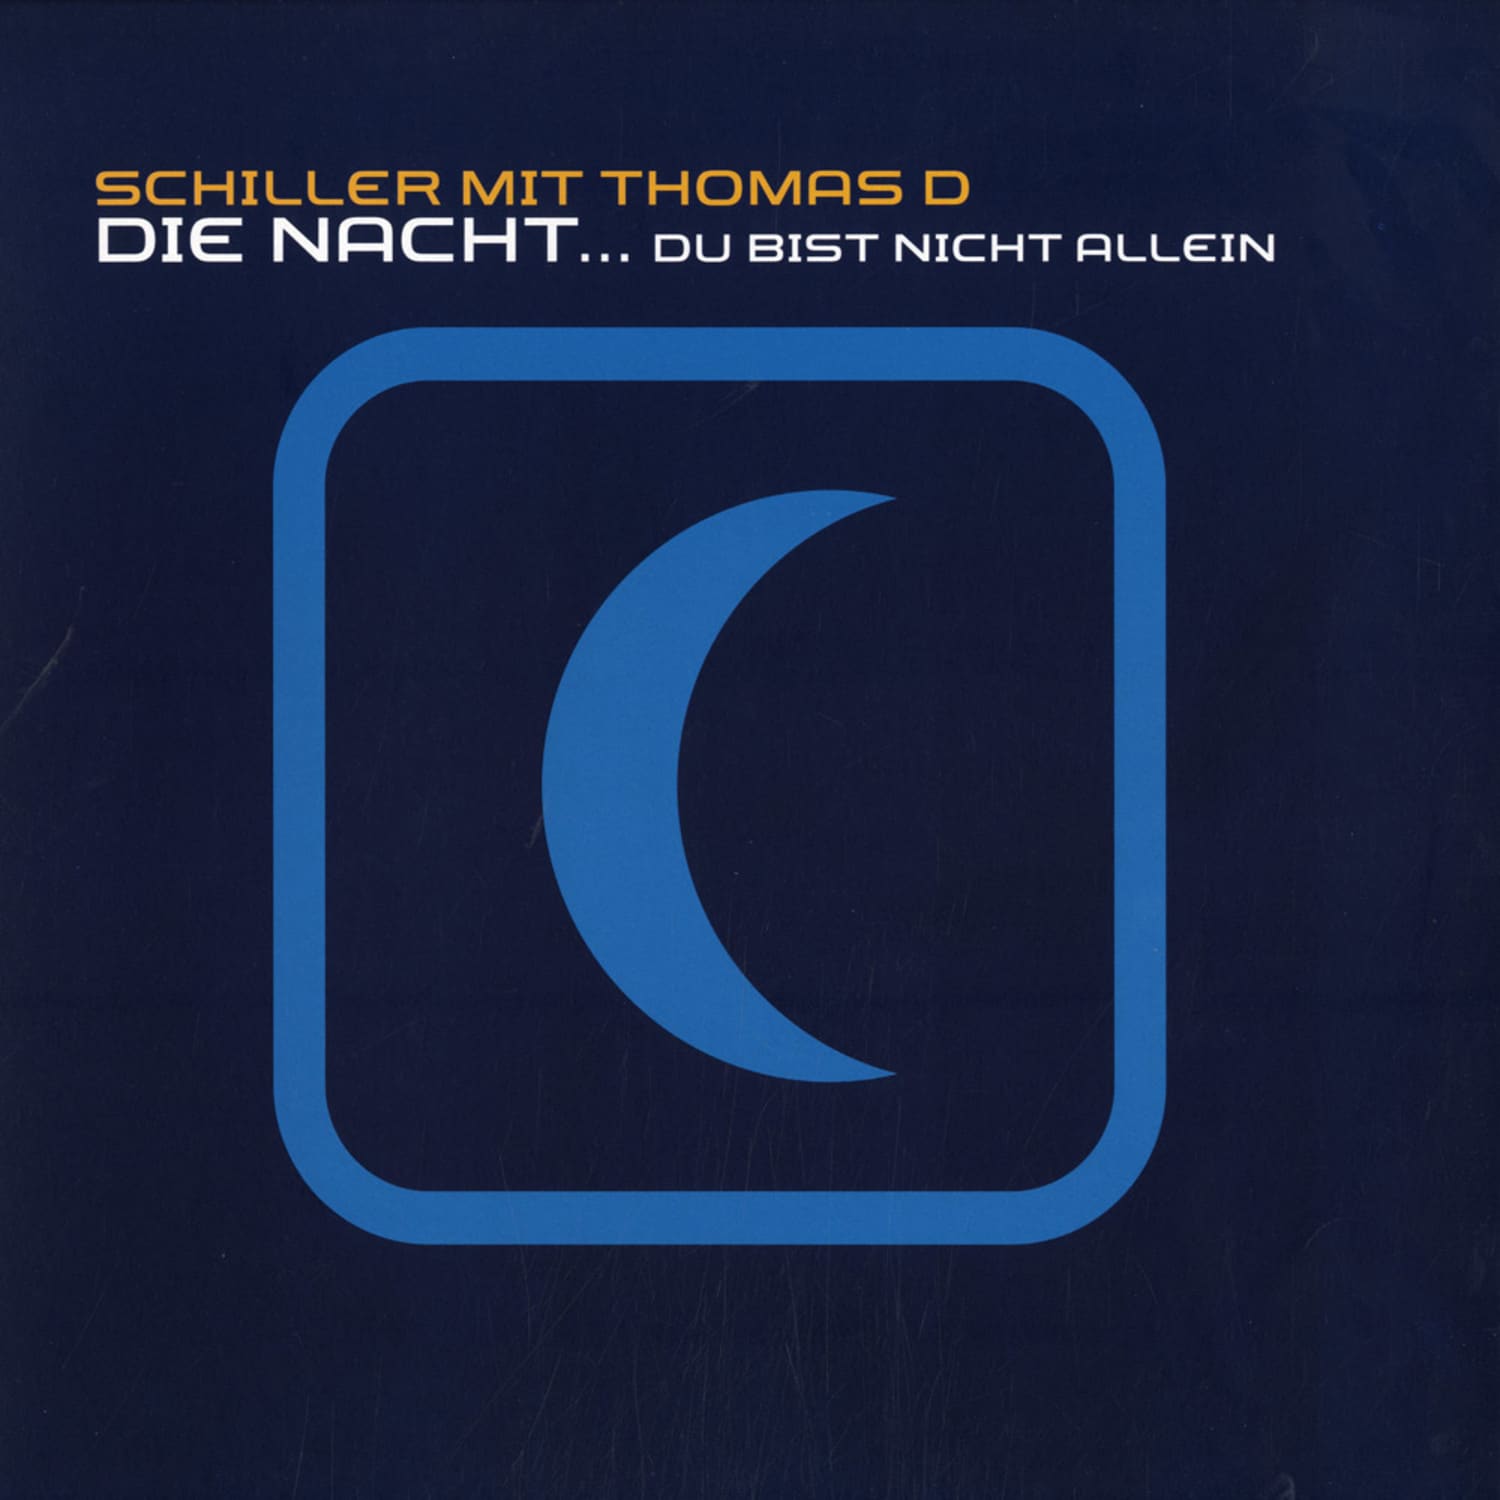 Schiller mit Thomas D - DIE NACHT ... DU BIST NICHT ALLEIN